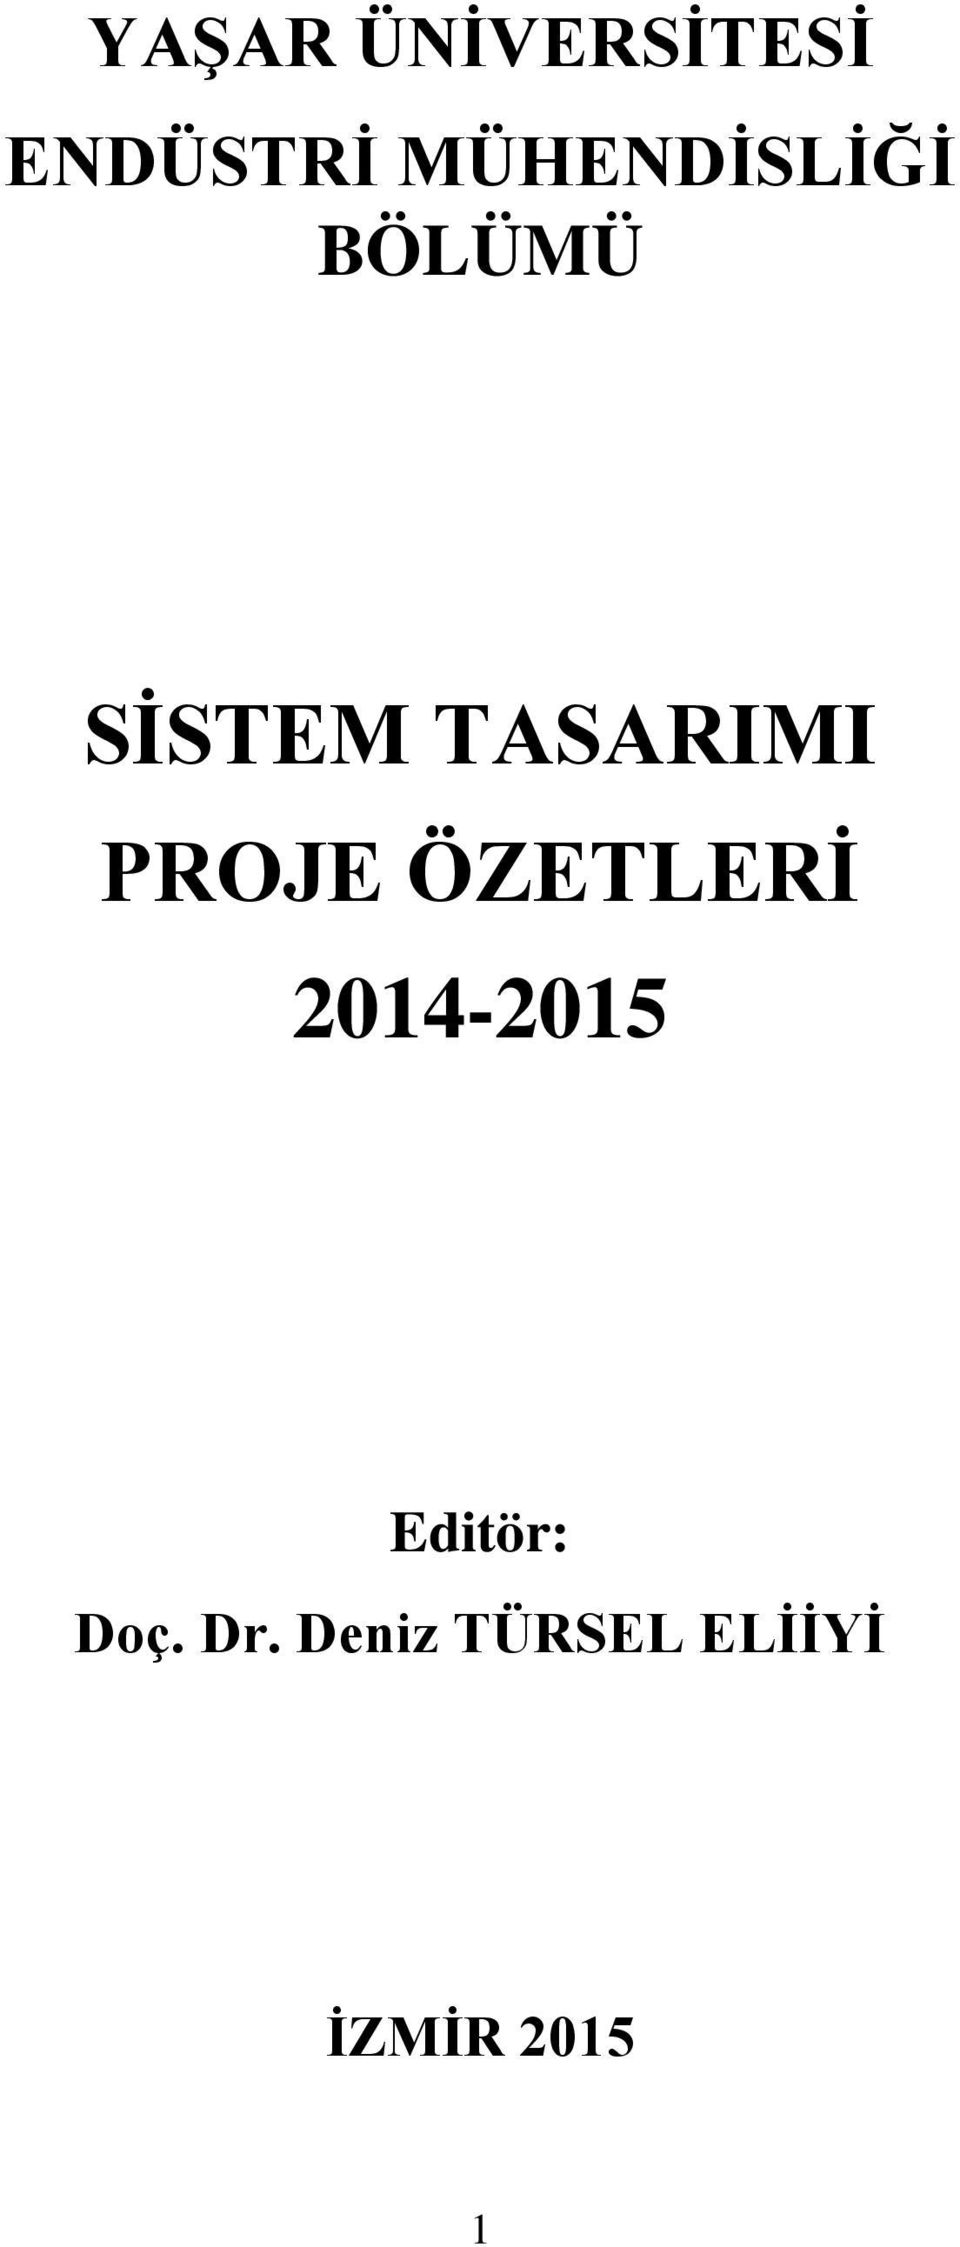 TASARIMI PROJE ÖZETLERİ 2014-2015